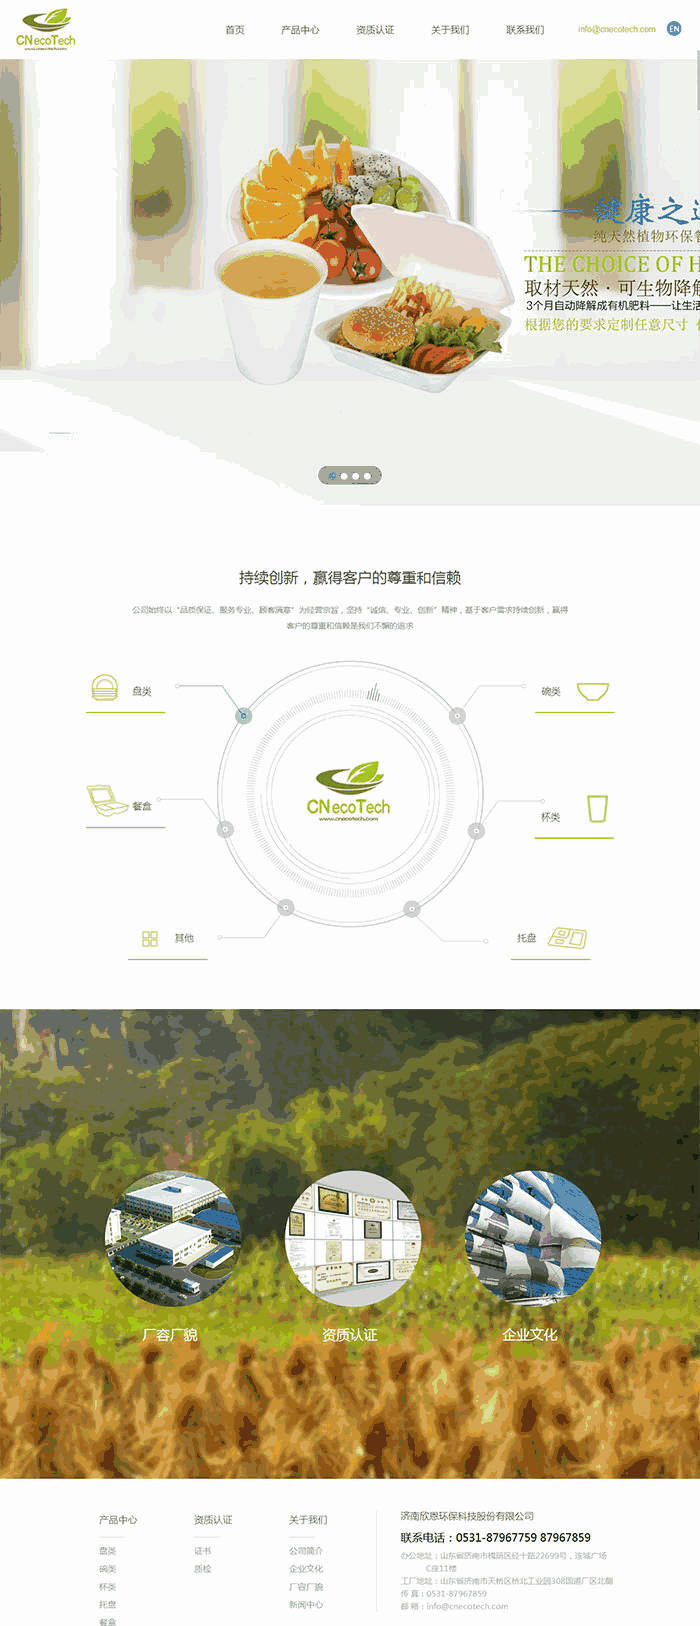 绿色环保科技公司官网网站含手机站WordPress模板下载演示图